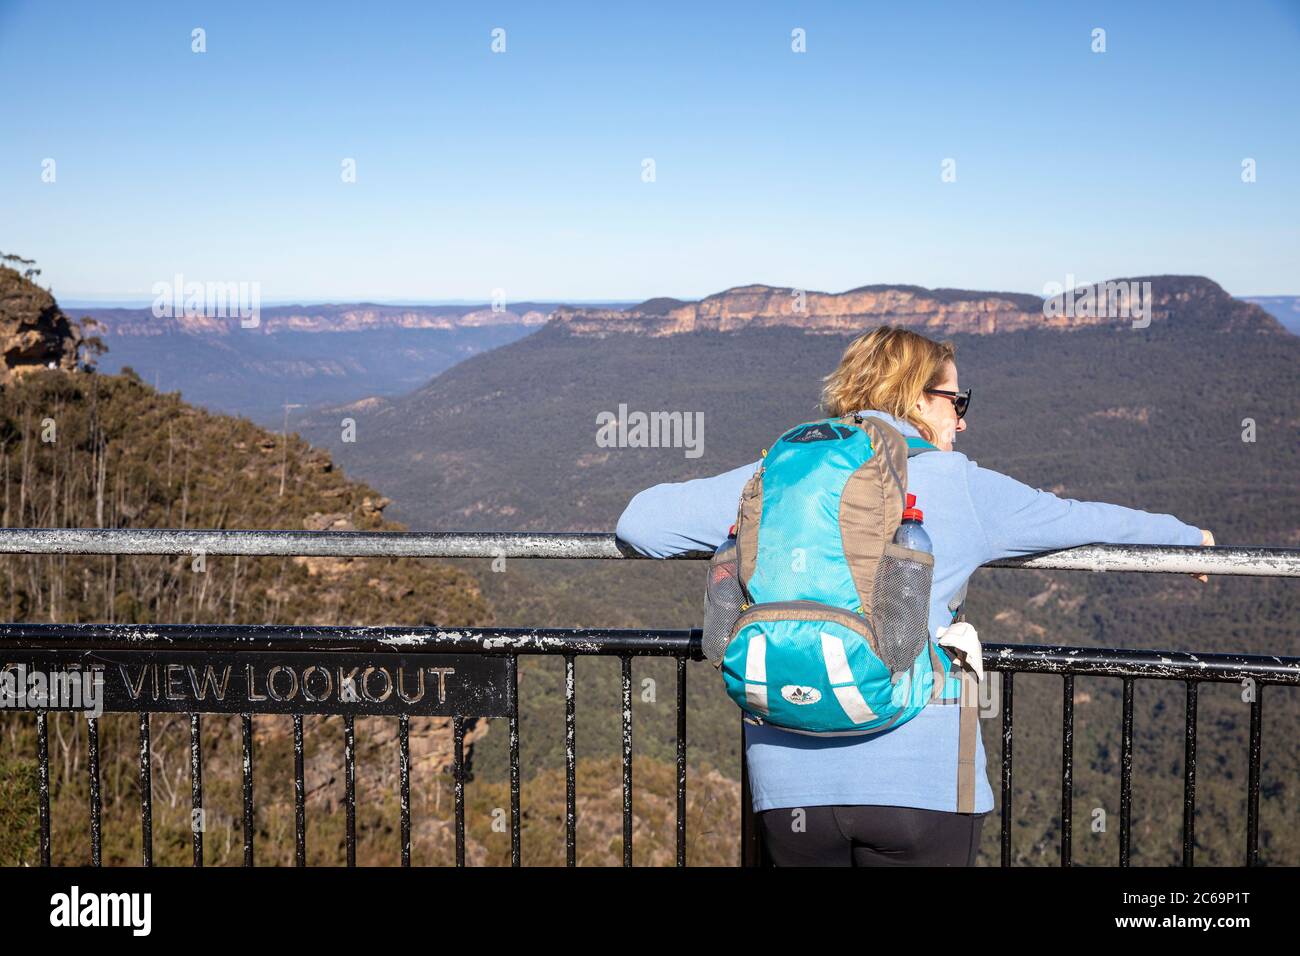 Blue mountains parc national dame femme hiker modèle a libéré vues Jamison Valley et Mt Solitary de la vue sur la falaise belvédère, NSW, Australie hiverne jour Banque D'Images